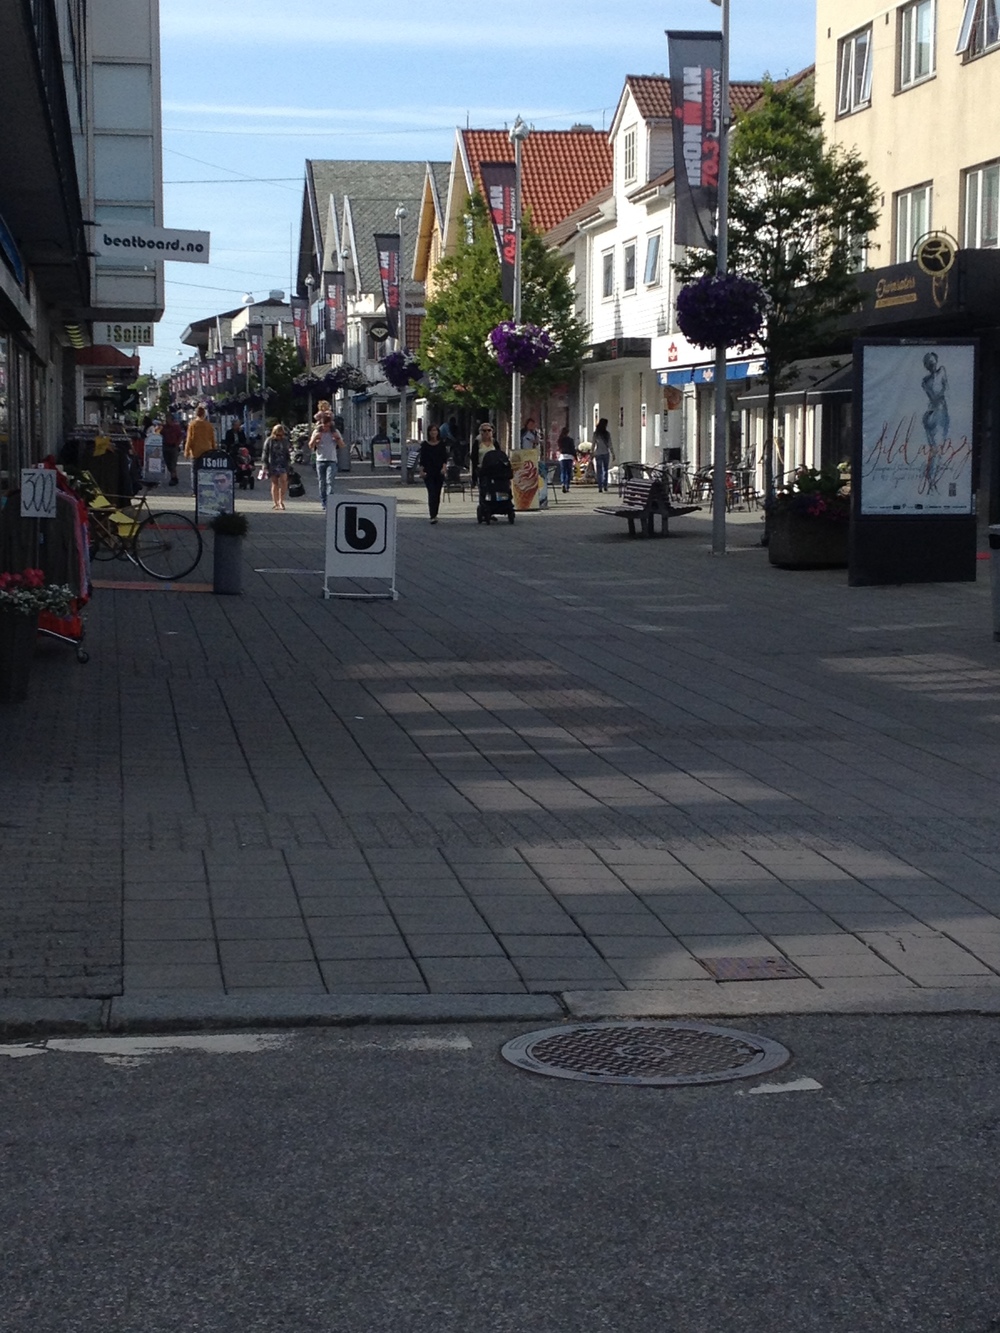 Haugesund Town Square